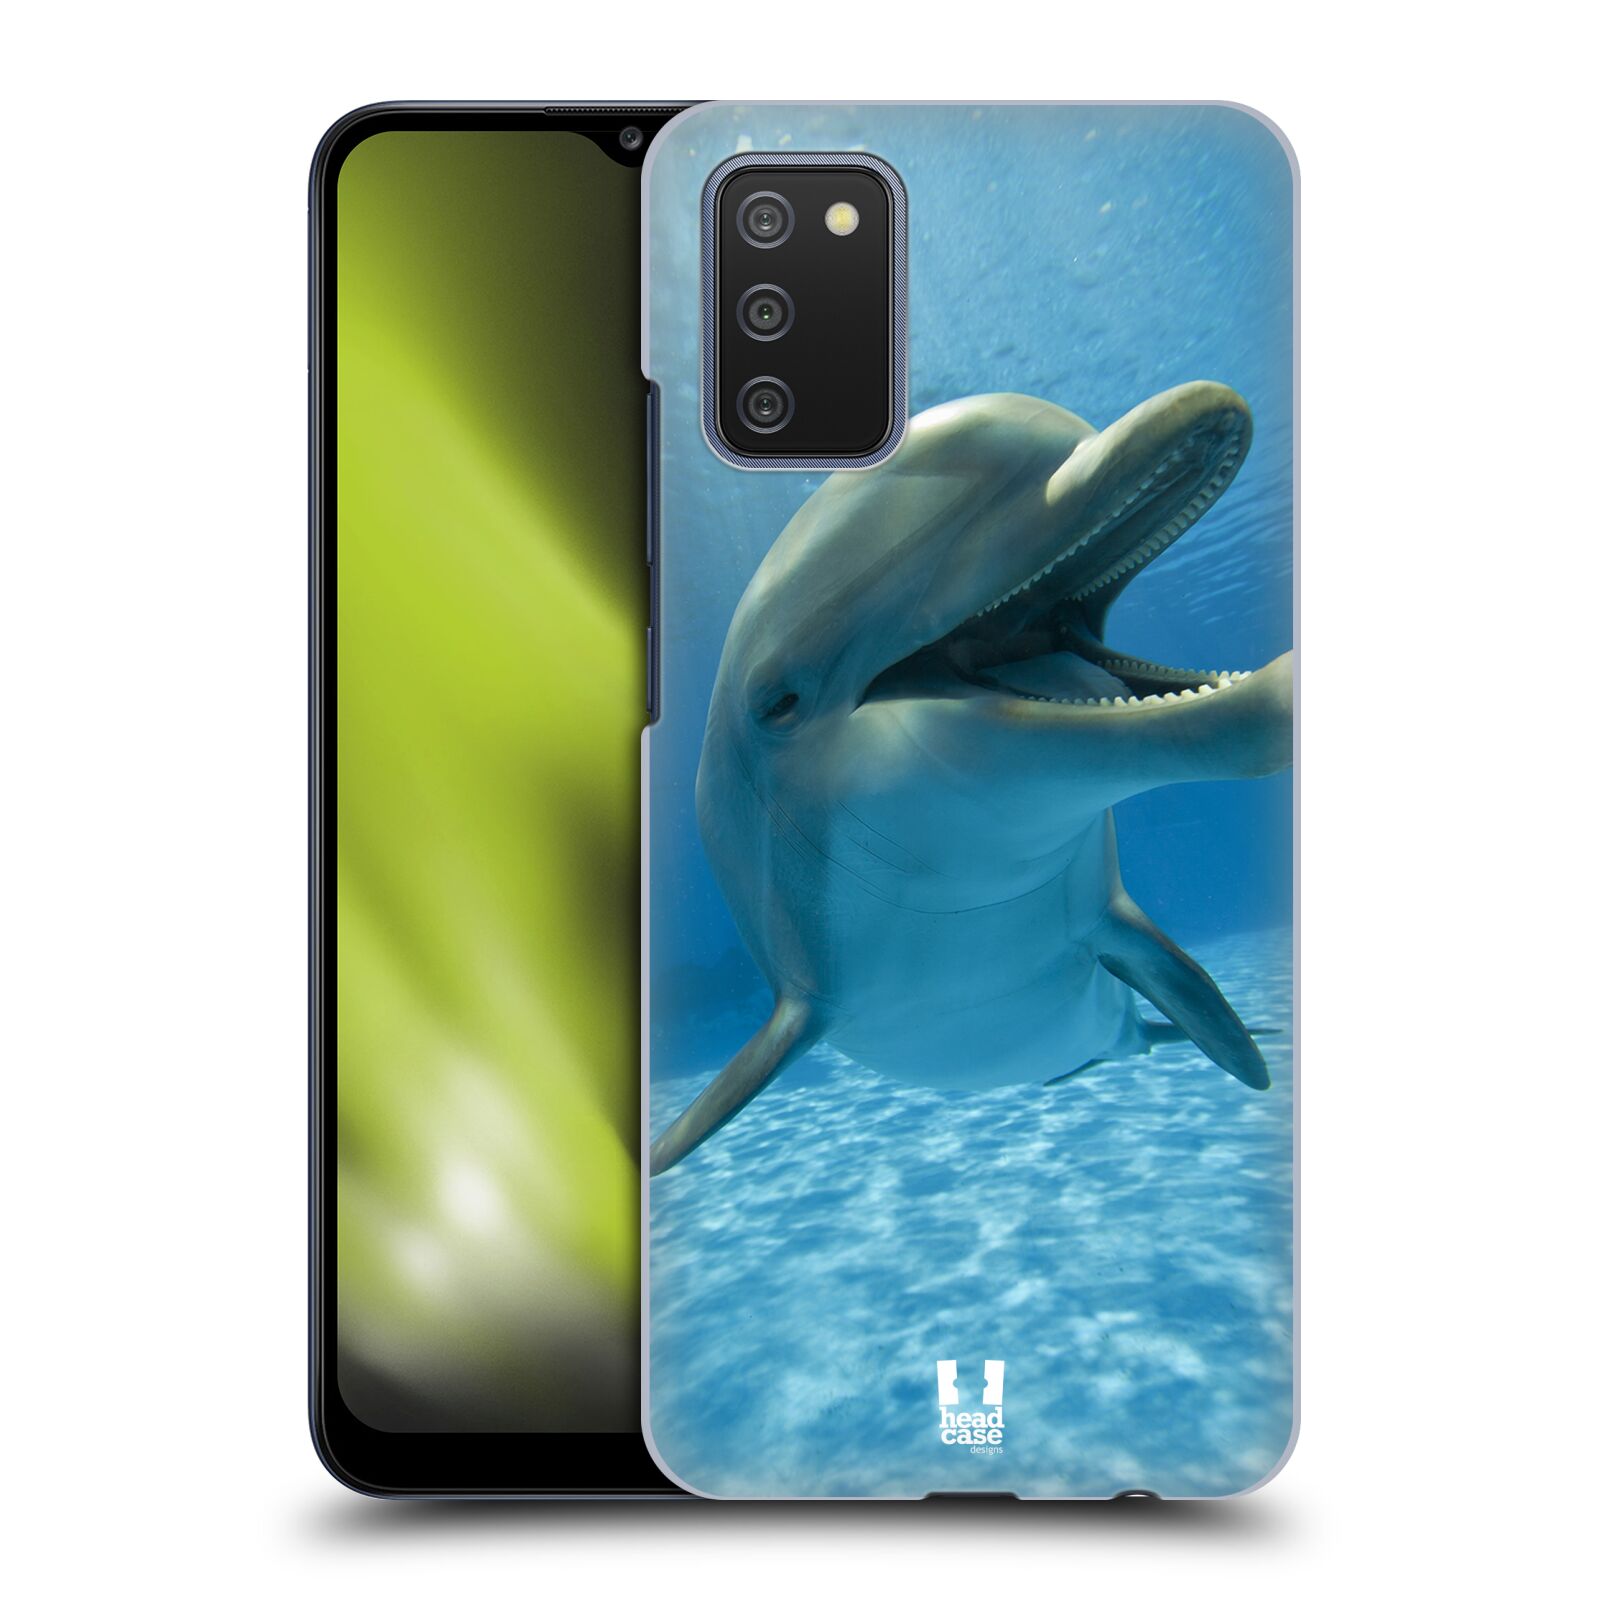 Zadní obal pro mobil Samsung Galaxy A02s / A03s - HEAD CASE - Svět zvířat delfín v moři